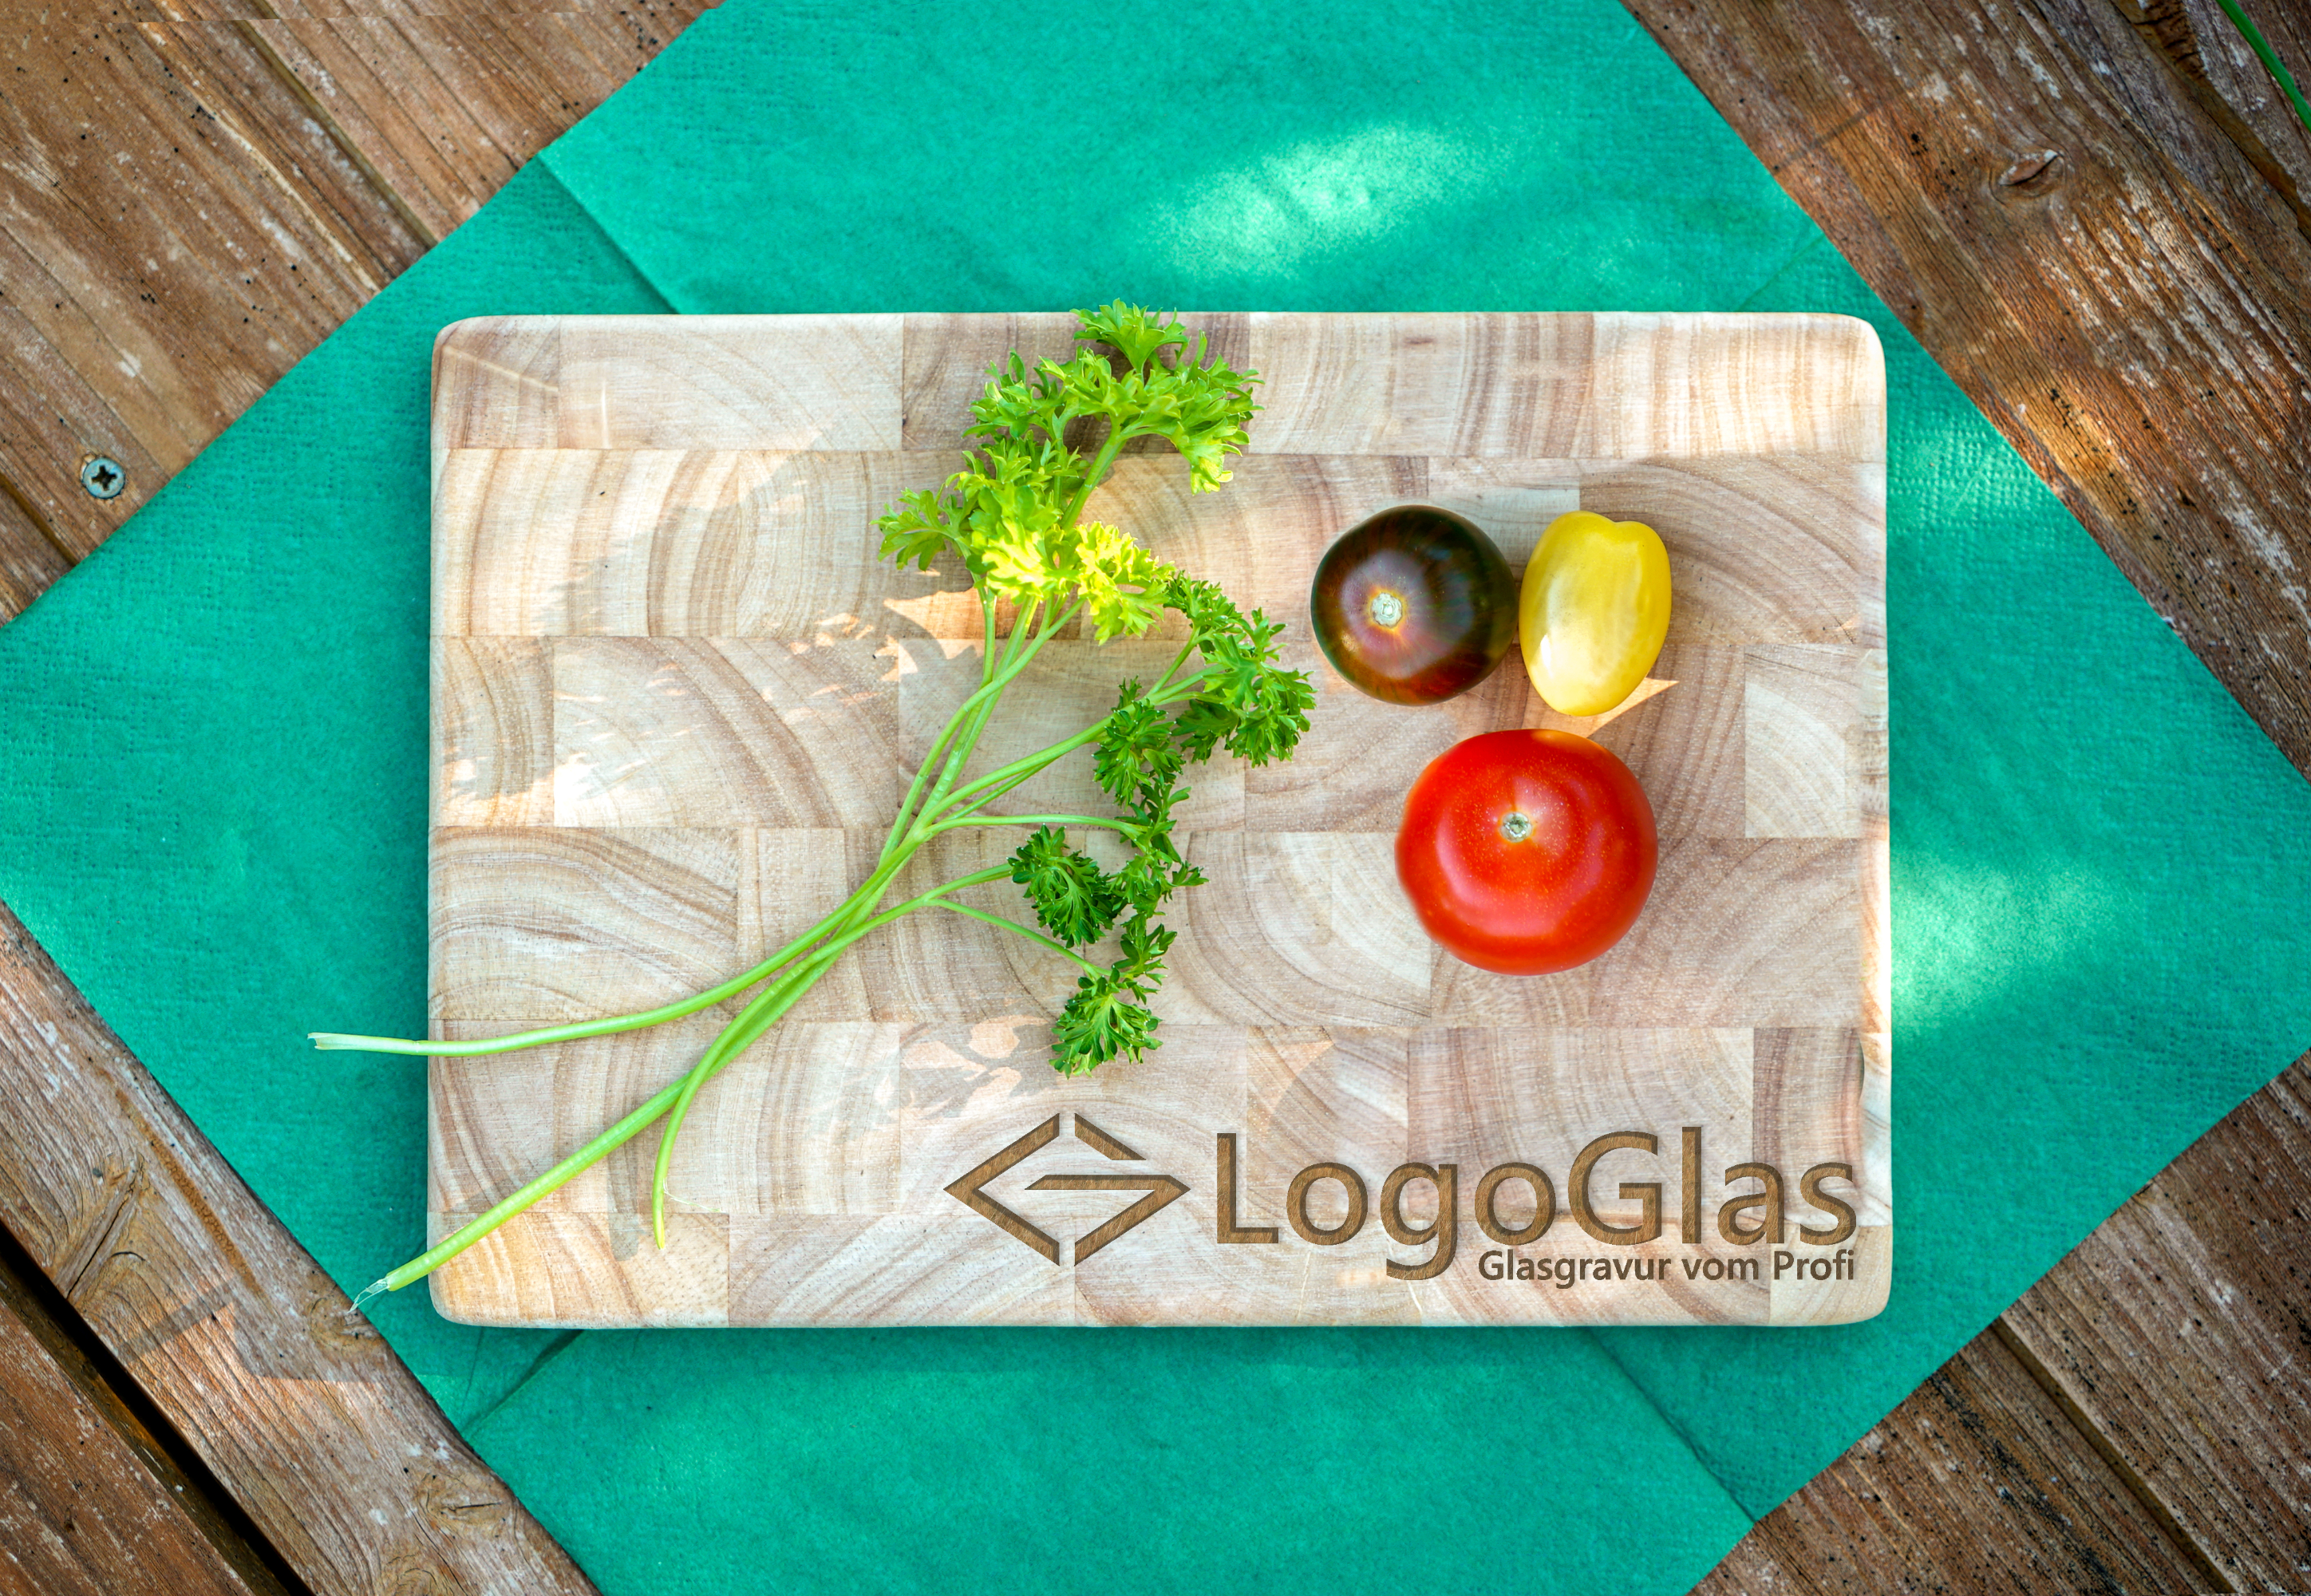 LOGO Frühstücksbrettchen Gummibaum personalisiert | 26x18 cm | Continenta 4015 Vesperbrettchen 